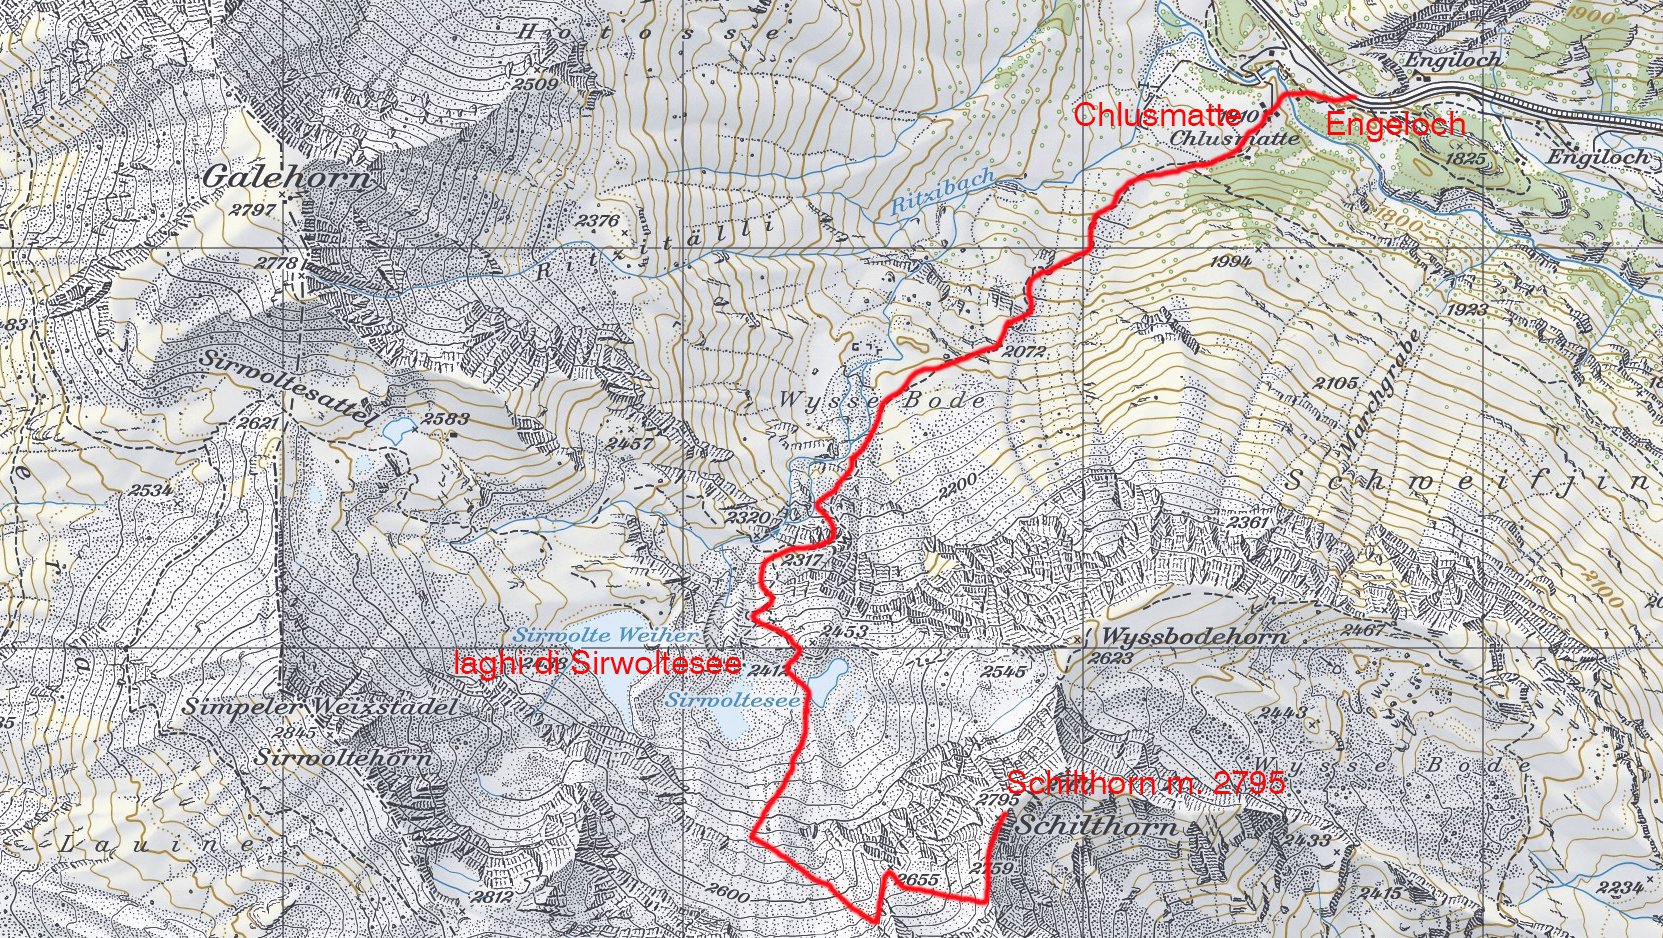 stralcio di carta topografica con l'itinerario di salita